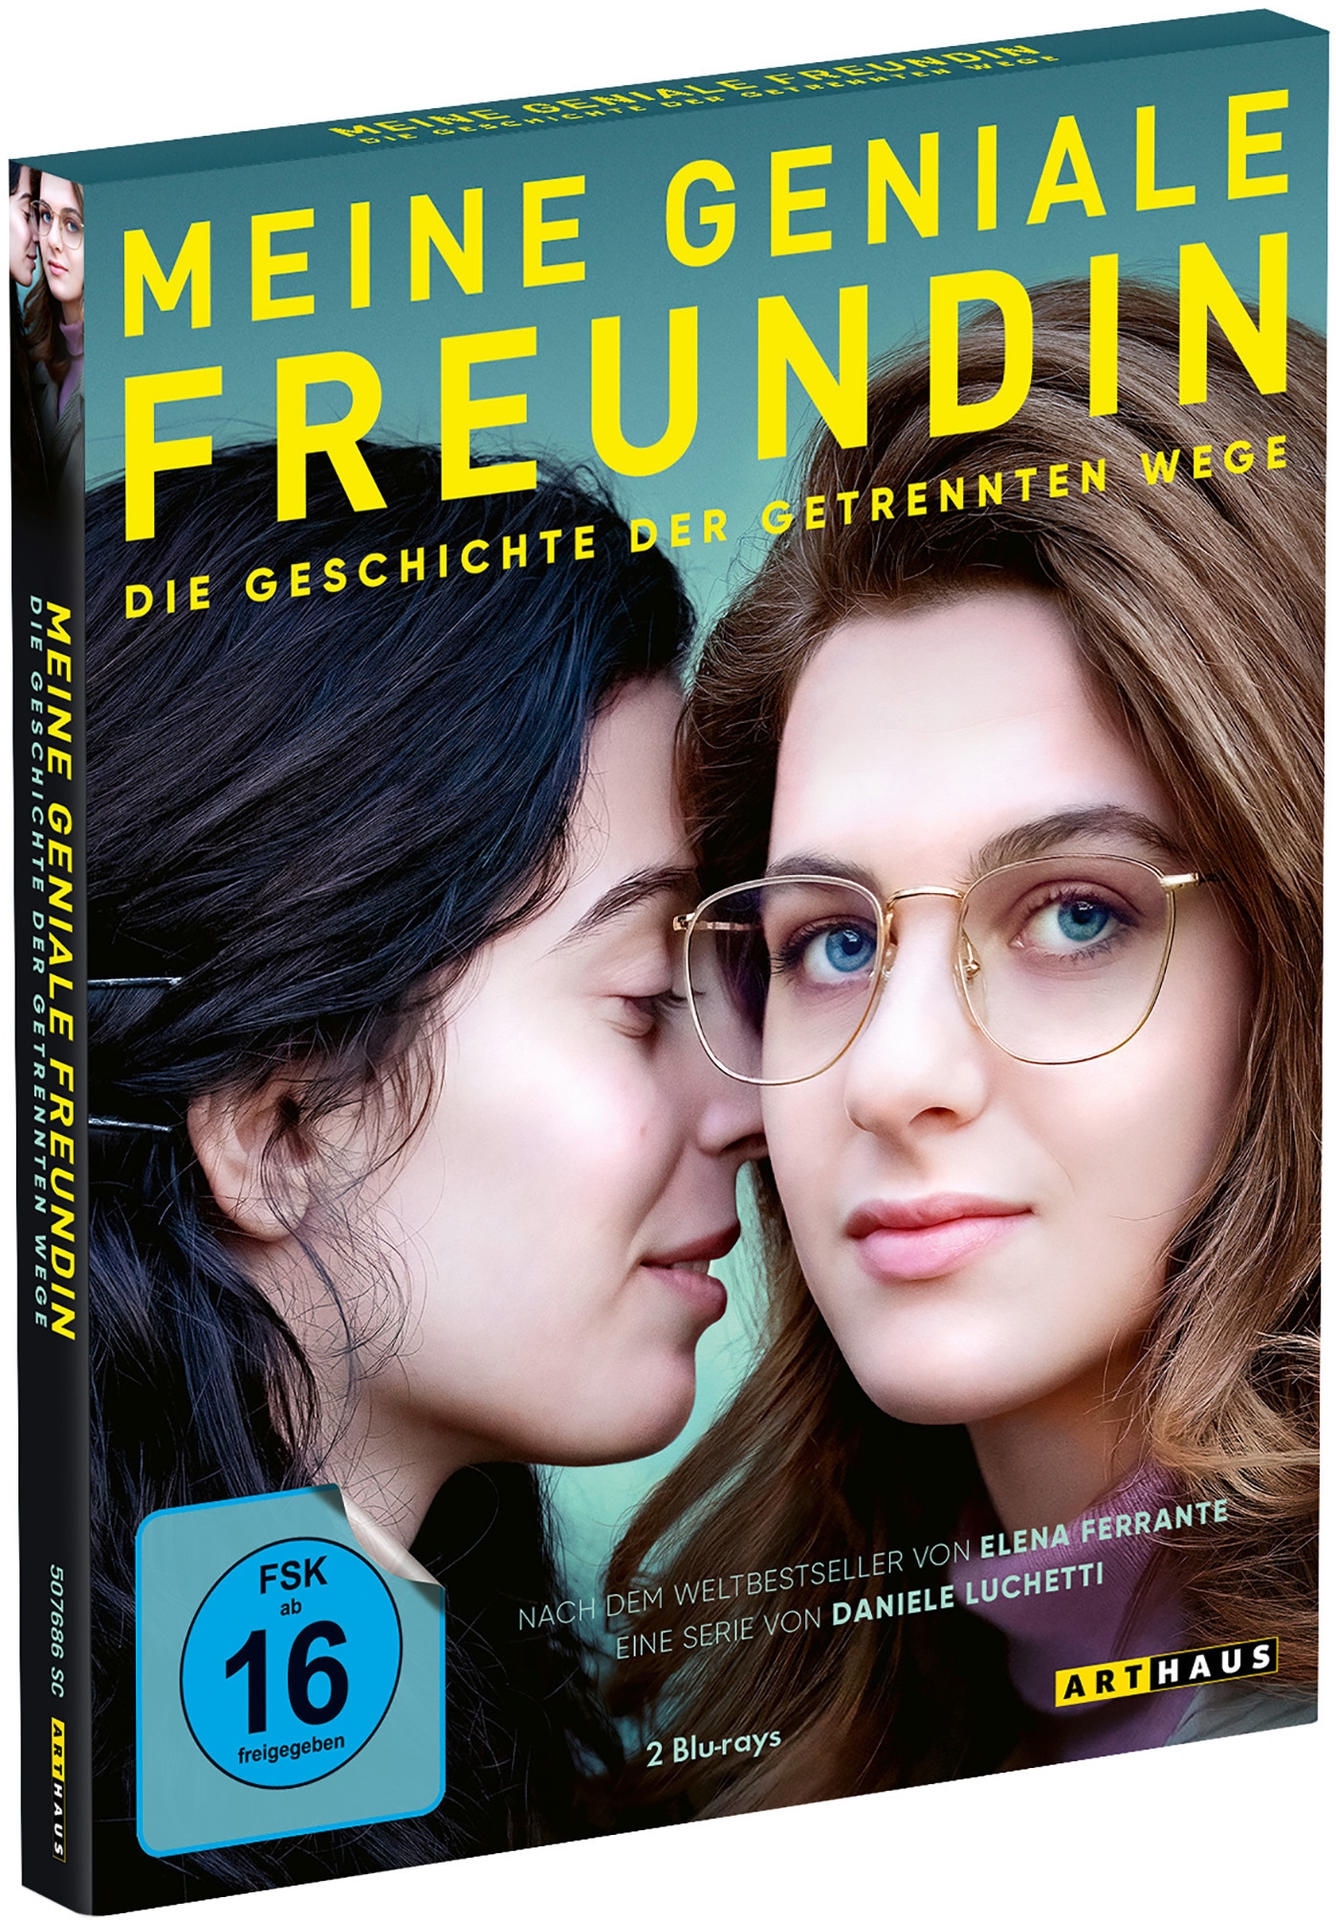 Meine Freundin - getrennten der 3 Wege Die - Staffel geniale Geschichte Blu-ray